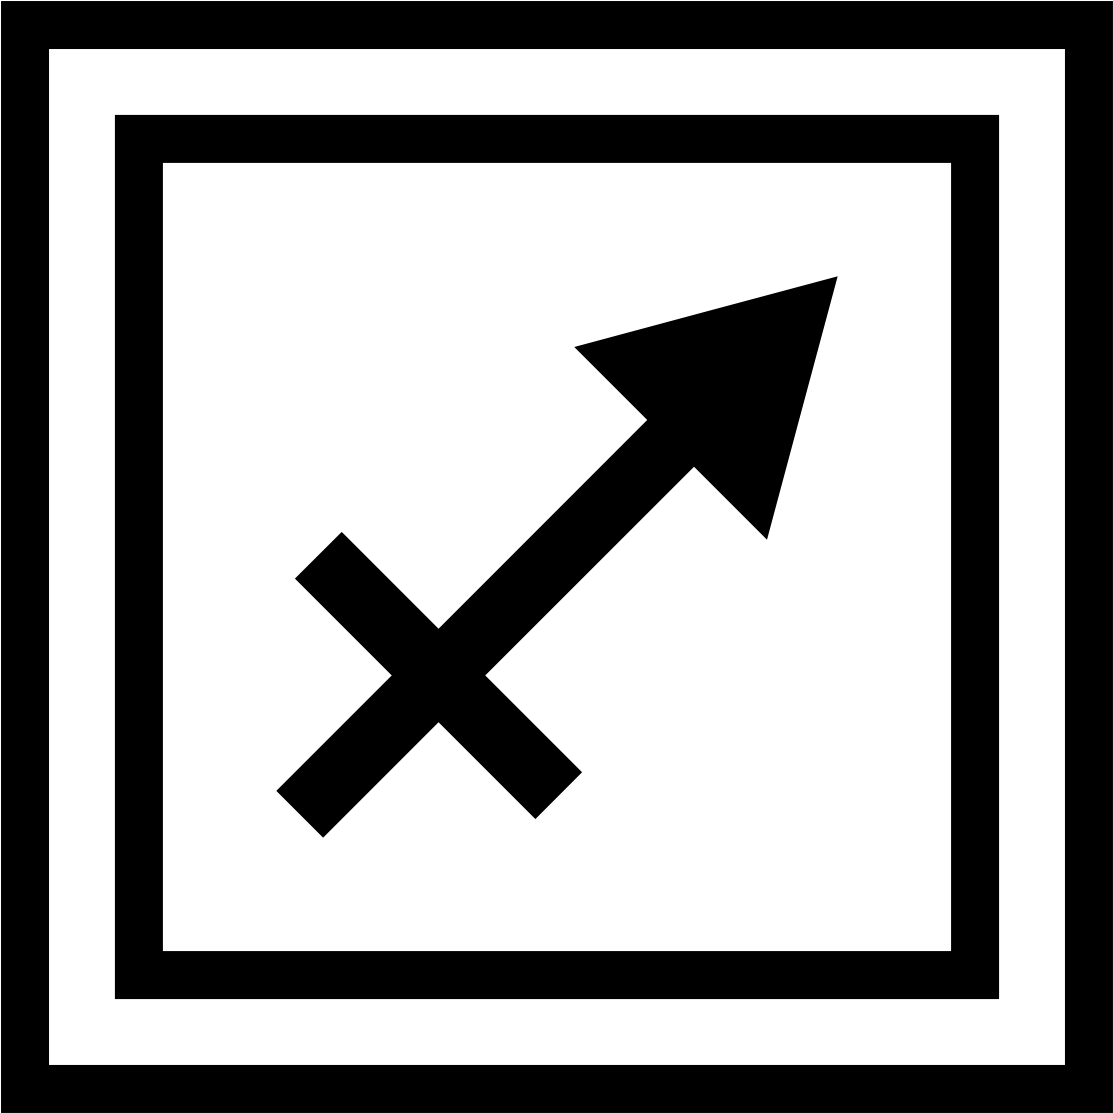 Sagittarius Horoscope - Scorpio Horoscope Image Black And White (1200x1200)